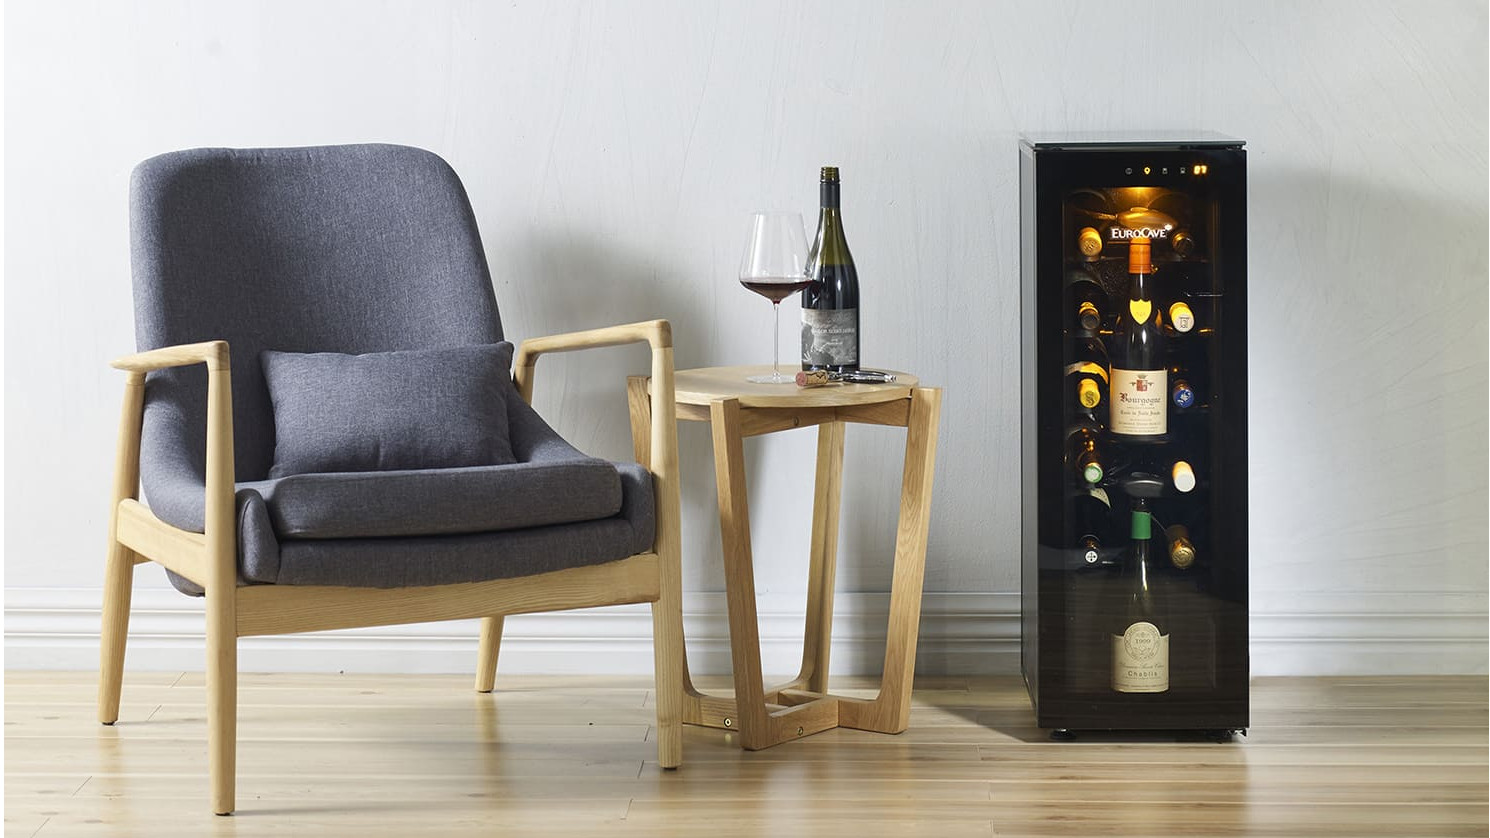 Bar à vin taille mini parfait pour un espace lounge, une salle de dégustation, une suite d'hôtel de luxe. Un équipement indispensable pour une expérience client exceptionnelle.